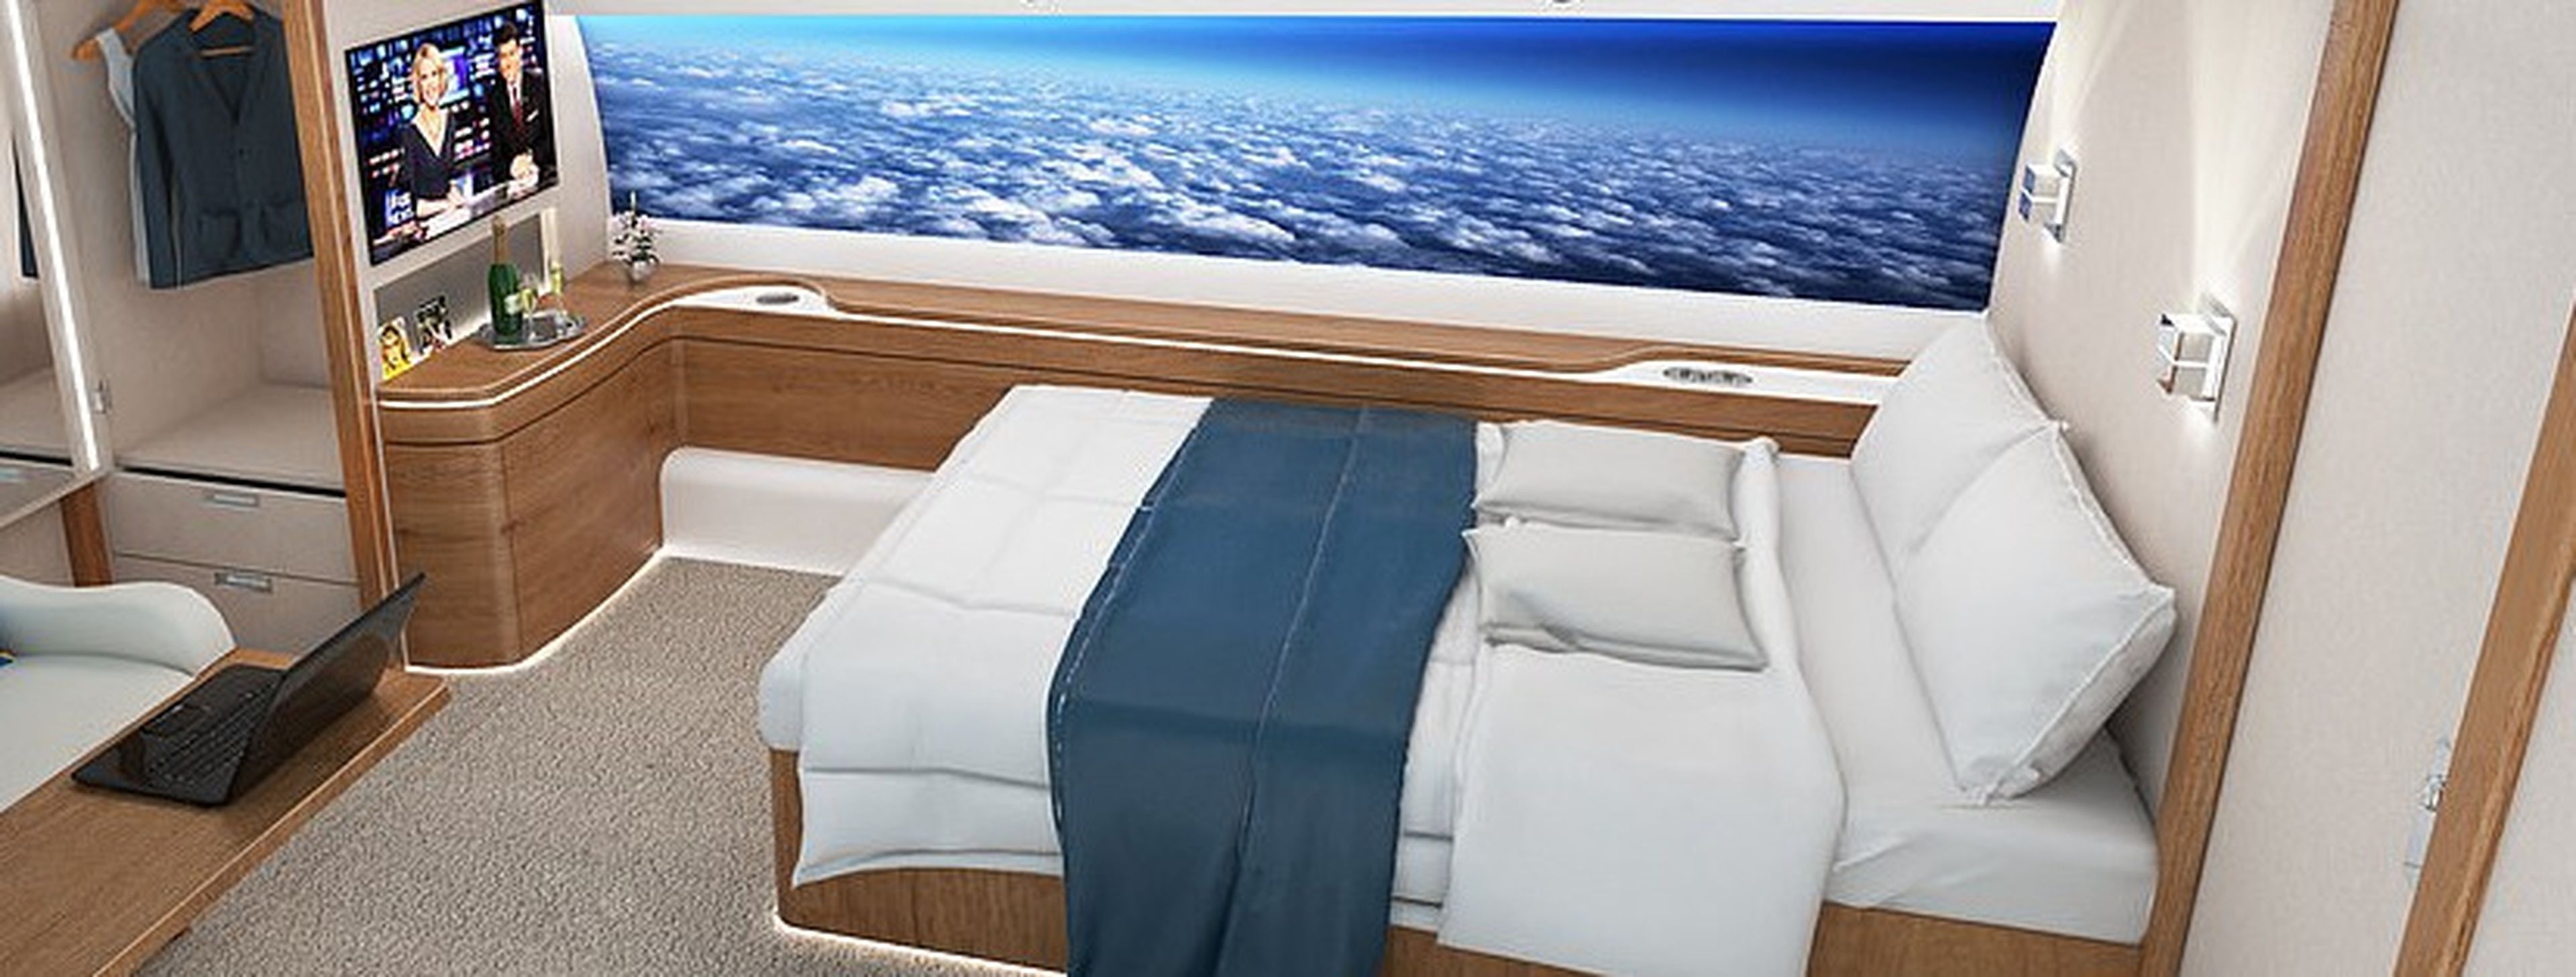 Dormitorio avión supersónico